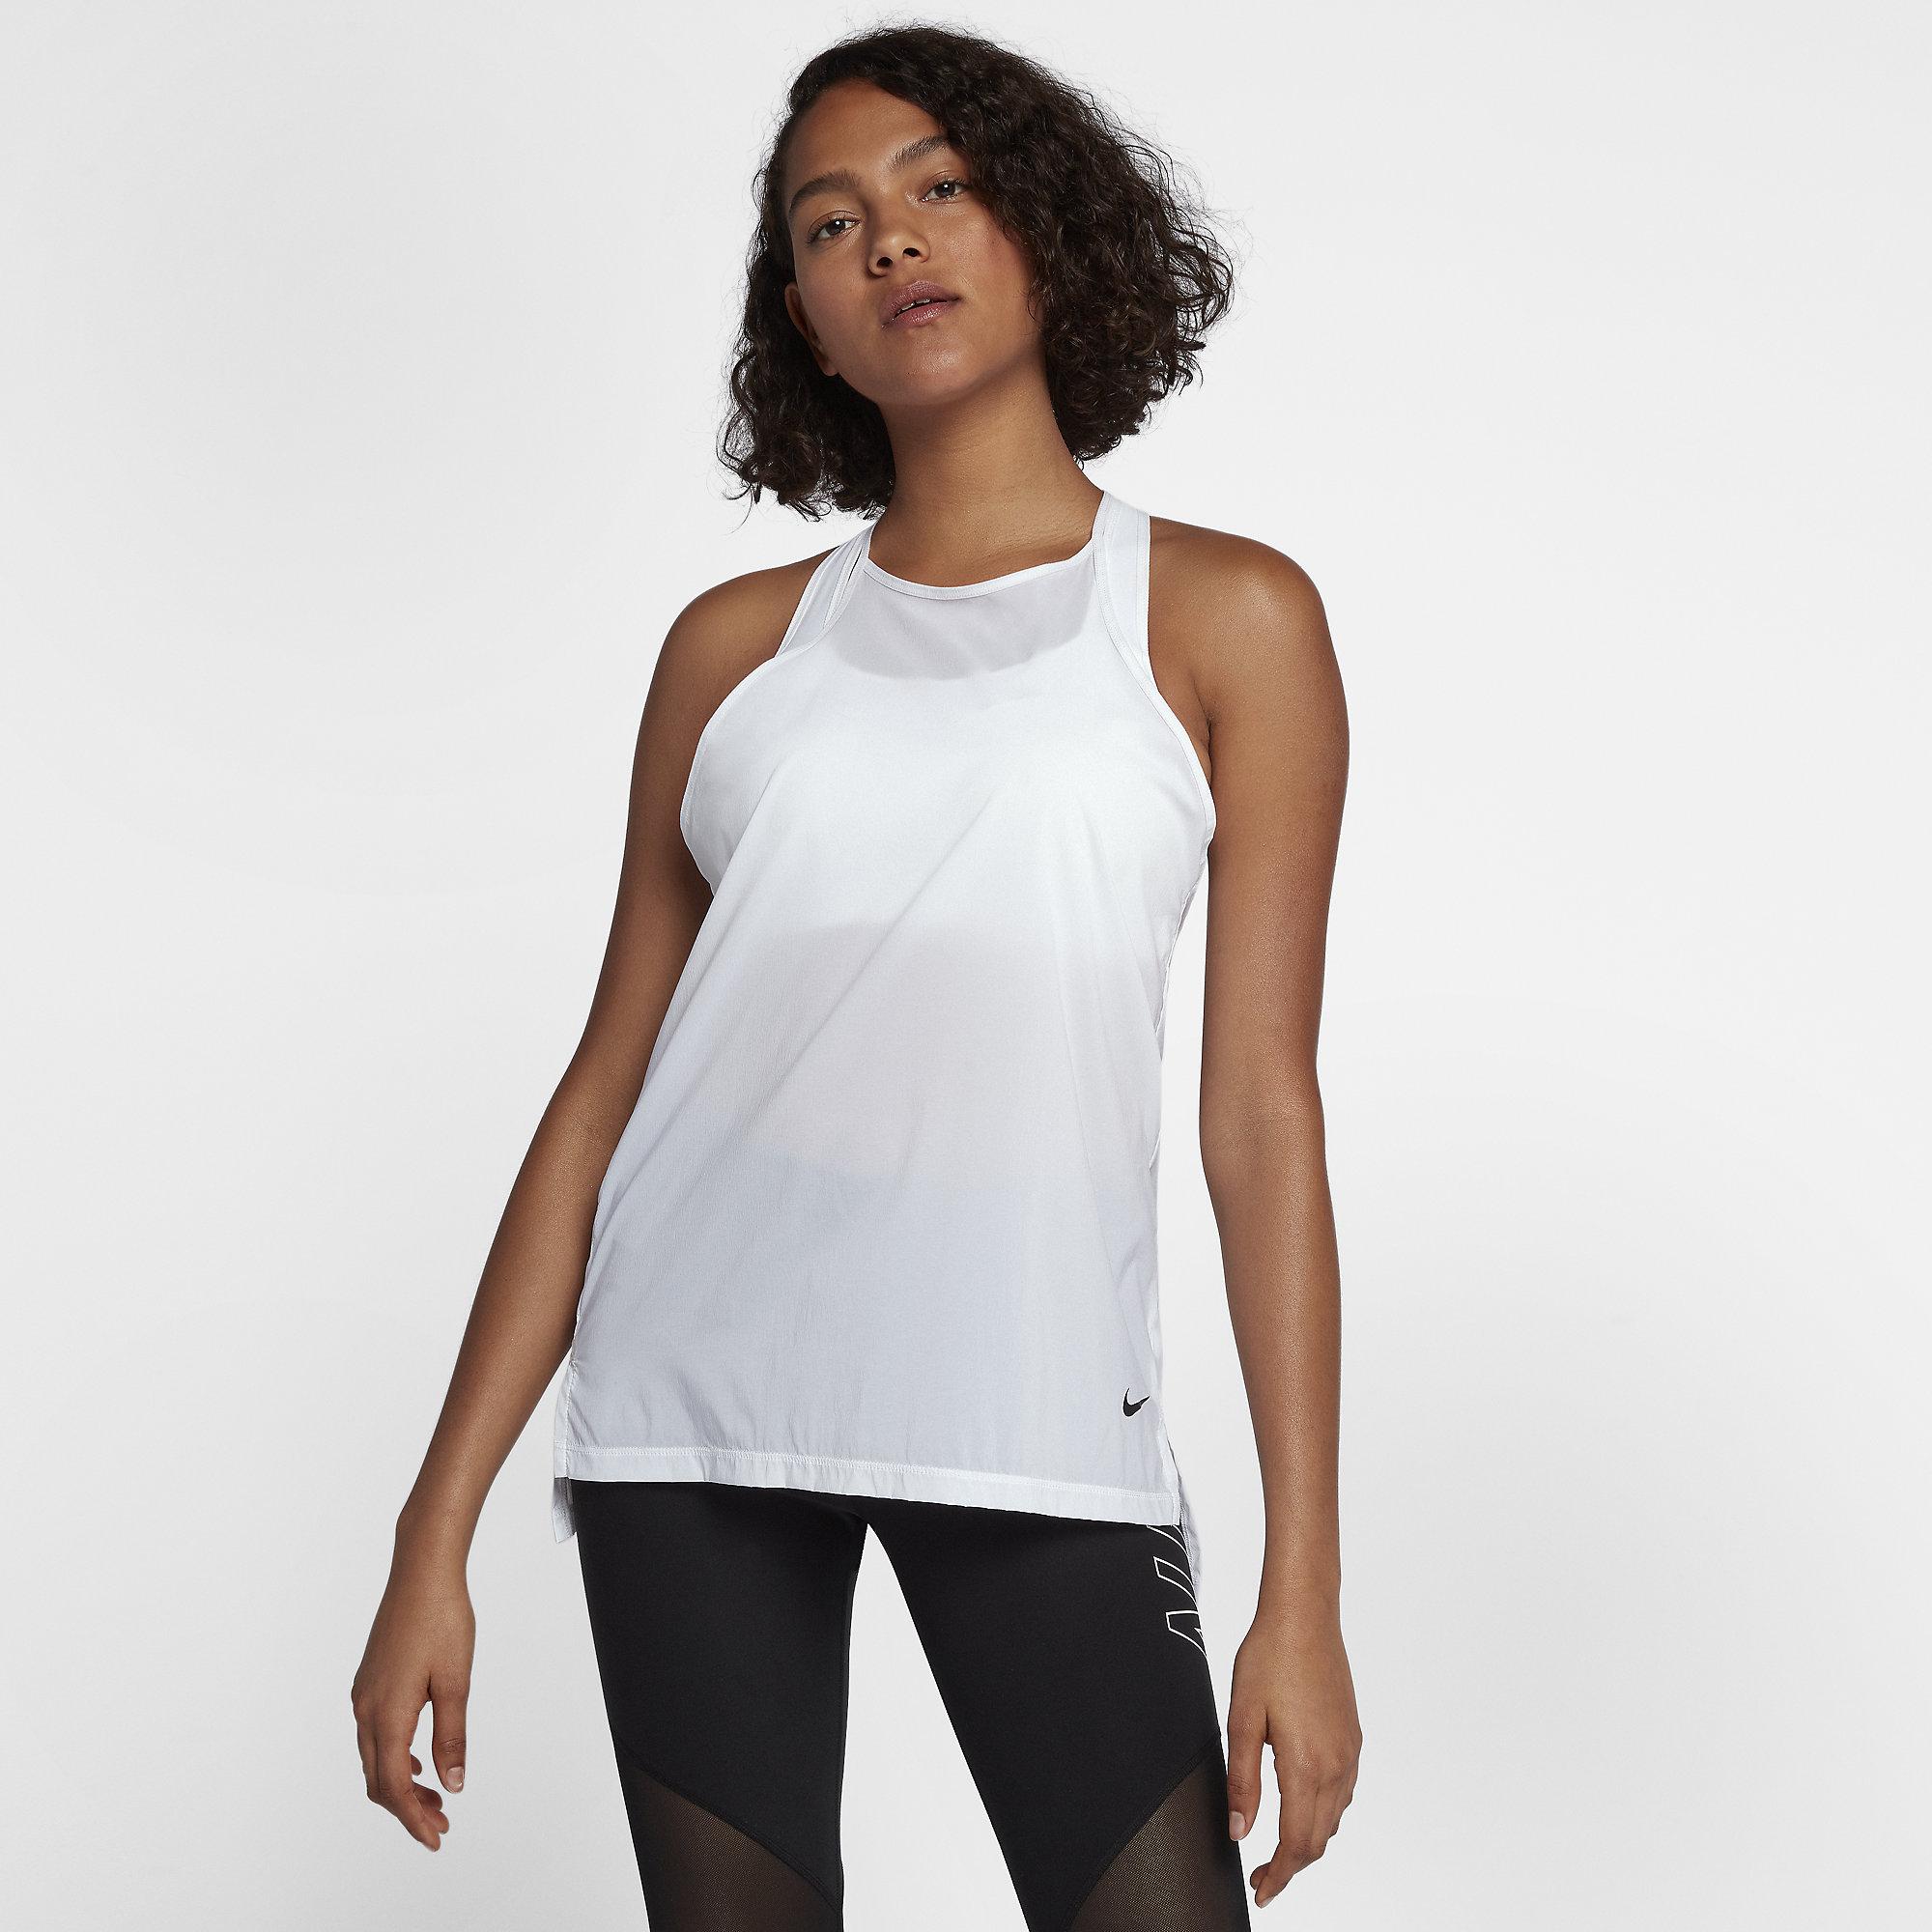 Nike Womens Flex Training Tank - White/Black - Tennisnuts.com